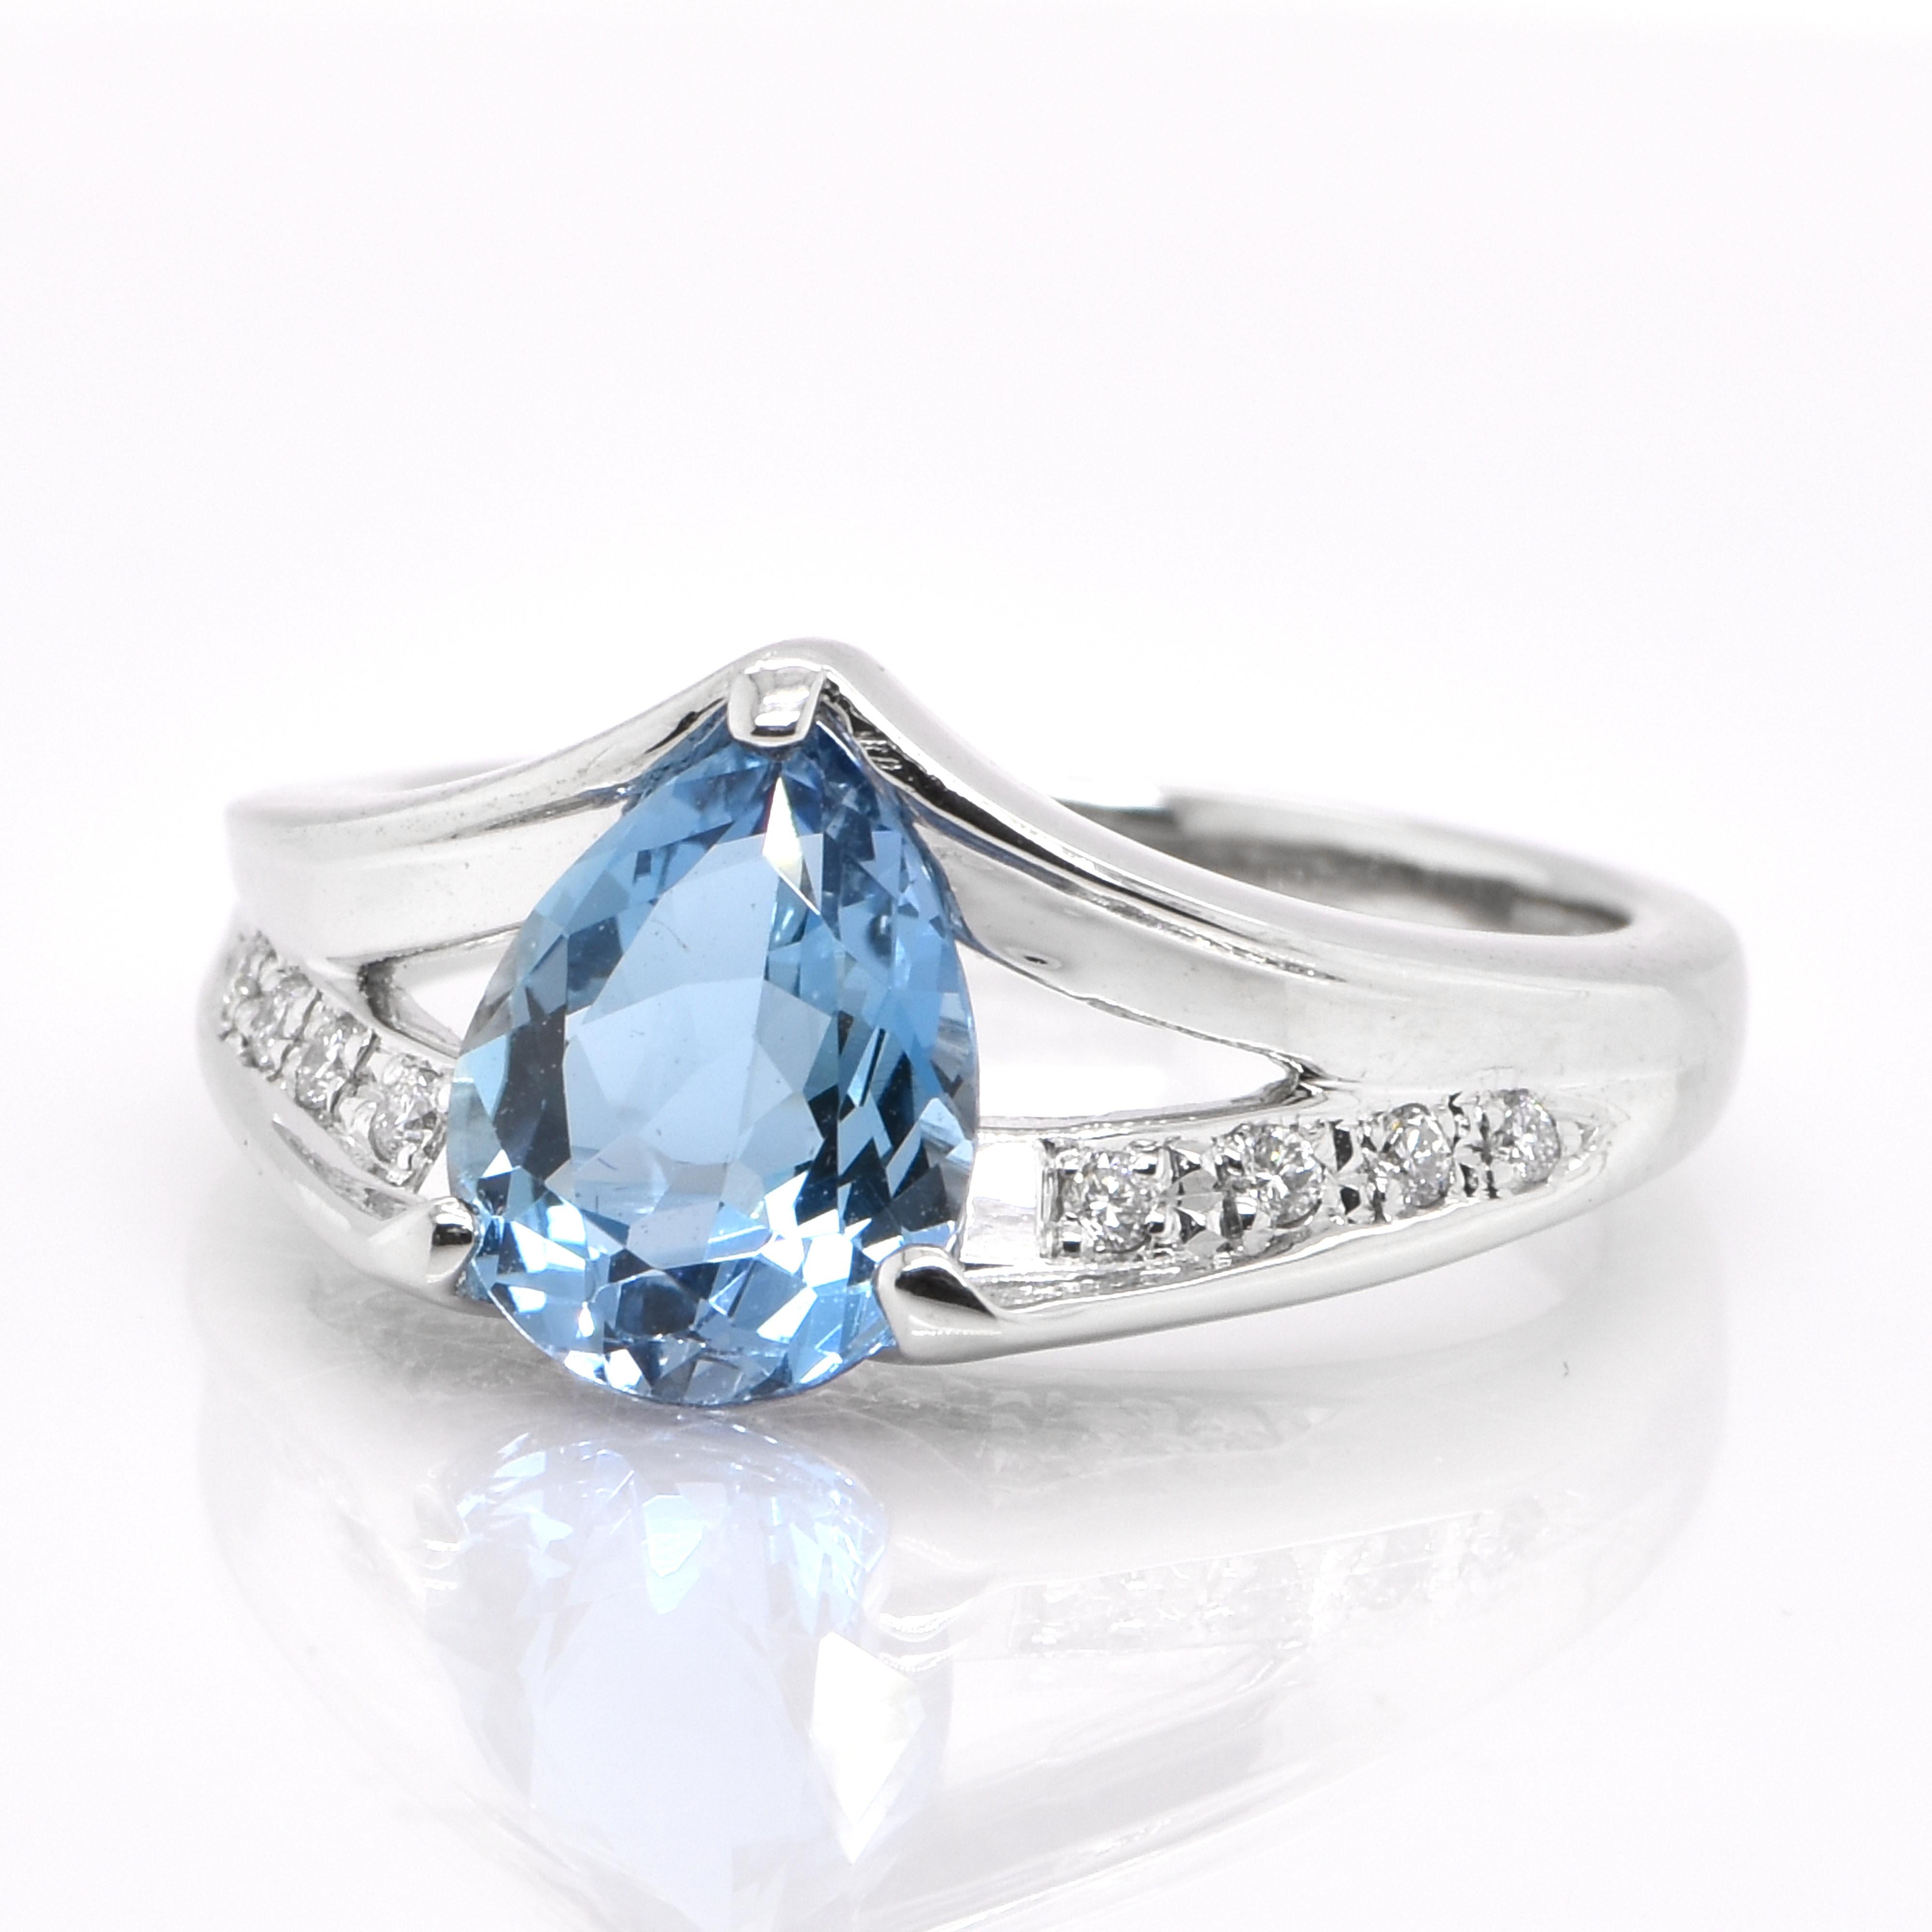 Ein wunderschöner Ring mit einem 1,51 Karat schweren, natürlichen Santa Maria Aquamarin und 0,15 Karat Diamanten in Platin gefasst. Aquamarine sind wegen ihrer kühlen blauen Farbe seit jeher geschätzte Edelsteine der Menschheit. Ursprünglich stammen